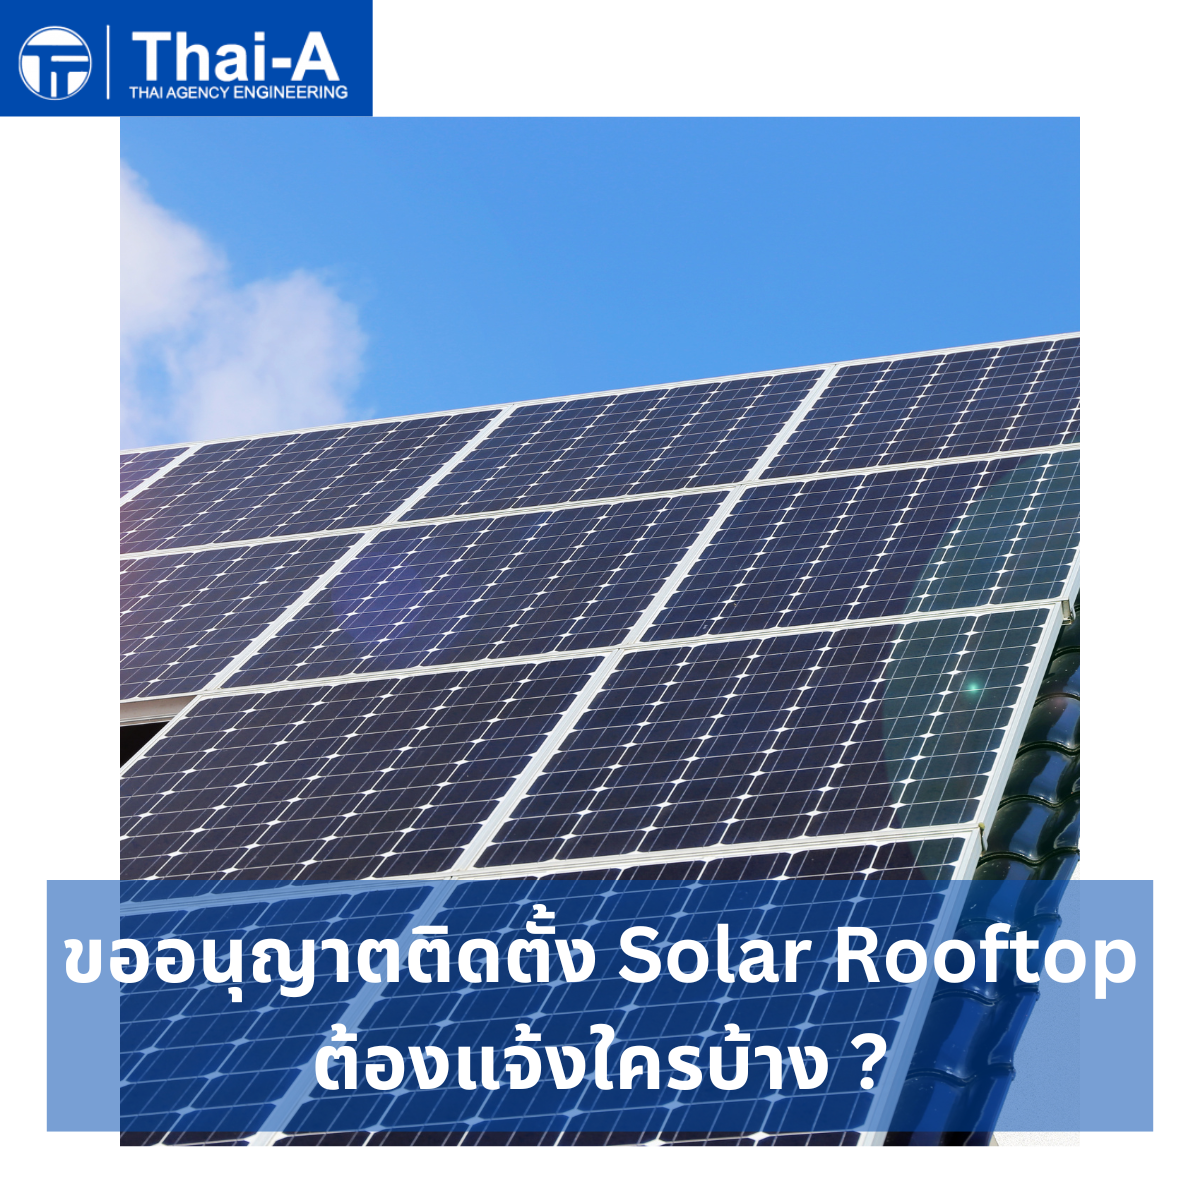 ขออนุญาตติดตั้ง Solar Rooftop ต้องแจ้งใครบ้าง (3)